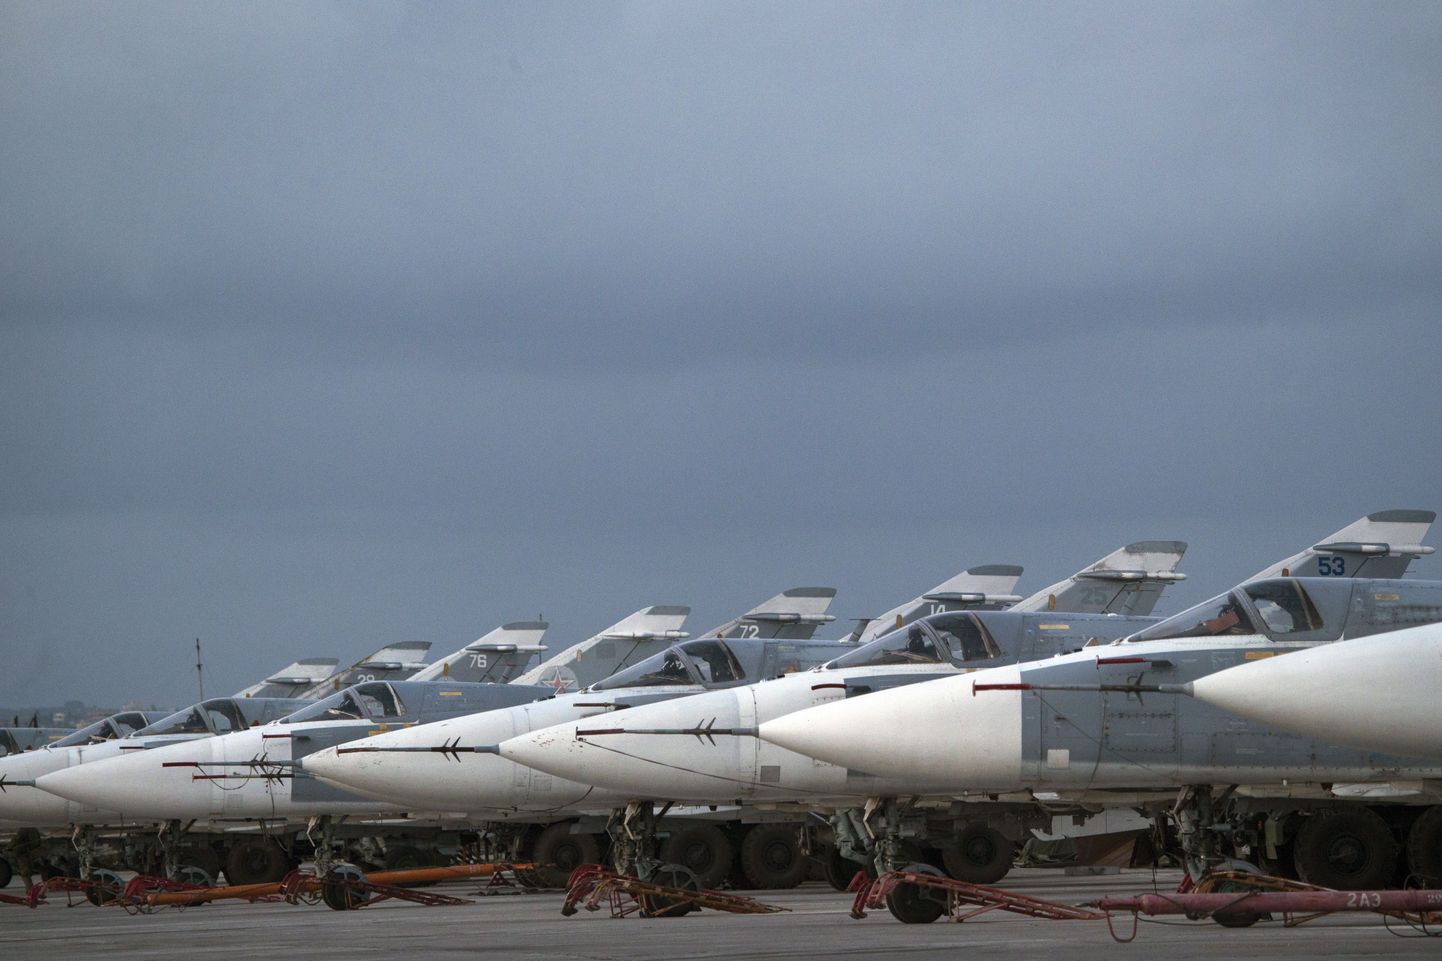 Vene sõjalennukid Süürias Hemeimeemi õhubaasis.